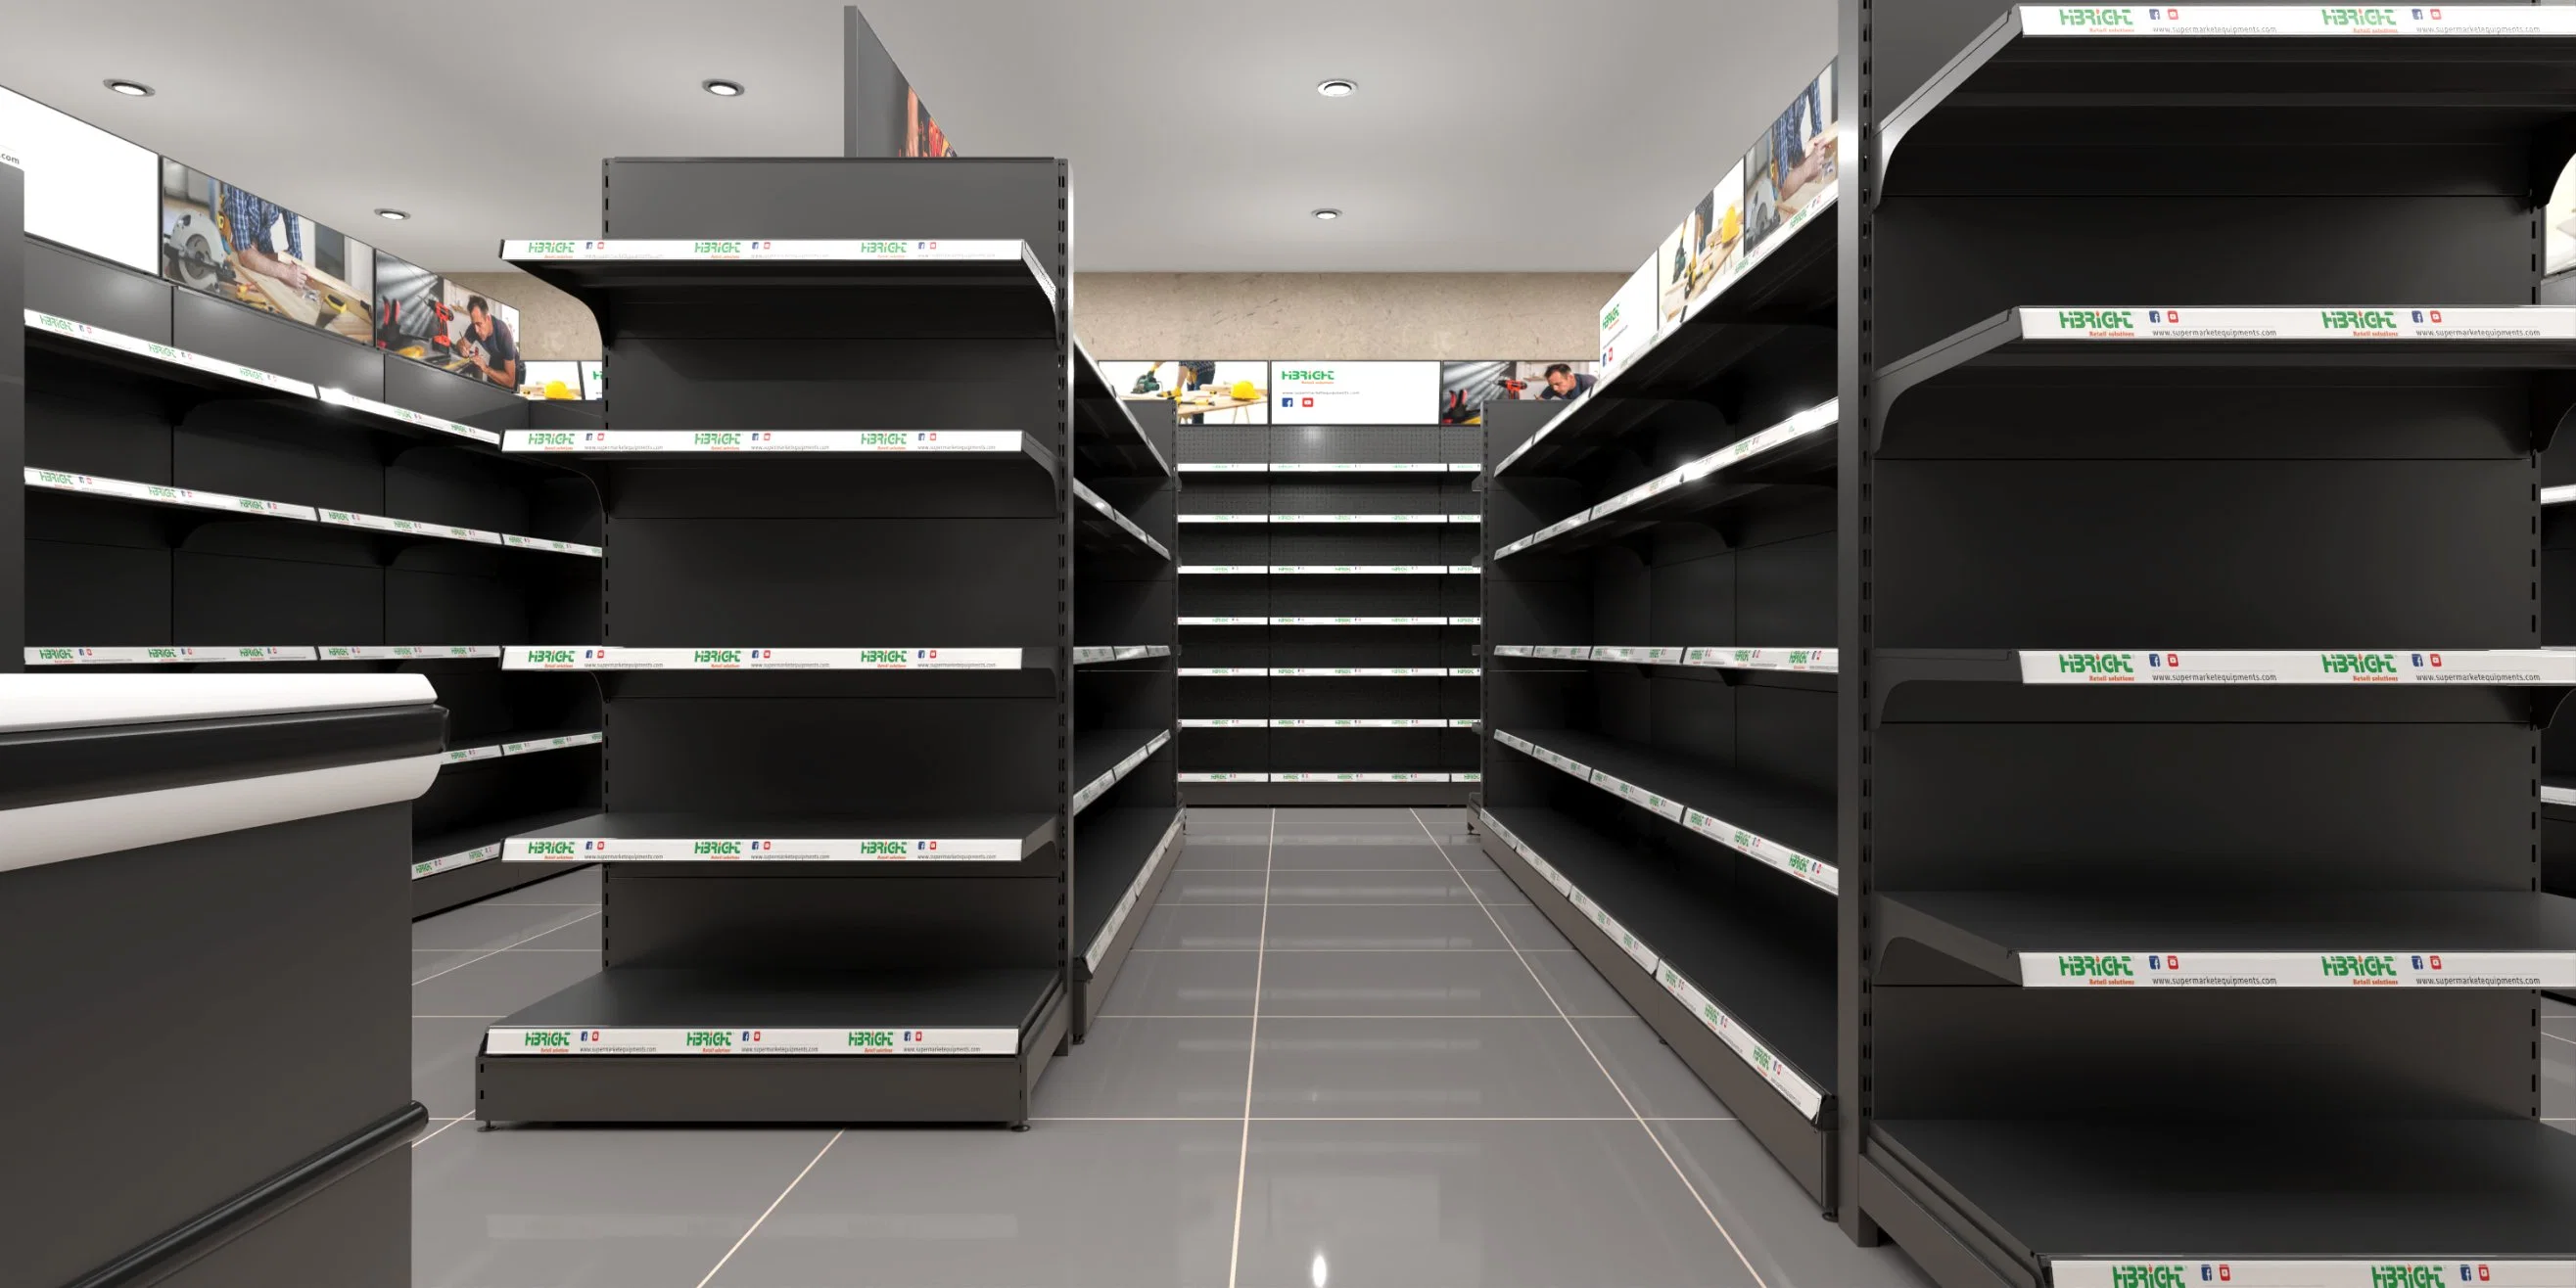 Preto personalizado parede única frente e verso armazenamento supermercado Equipamento Display Supermercado prateleira